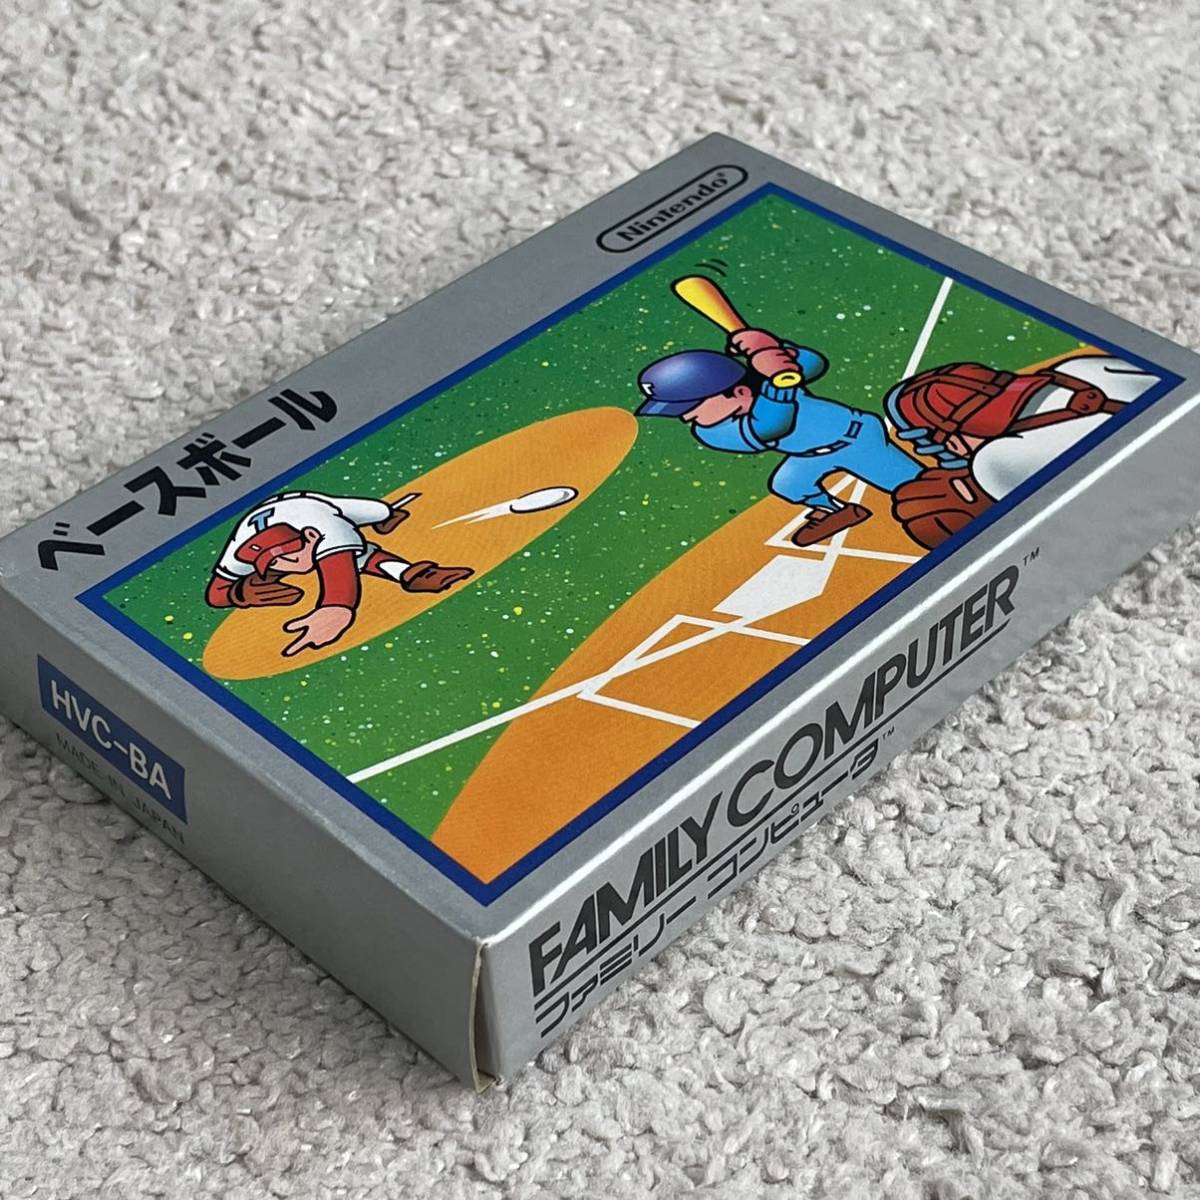 ファミコン初の野球ゲーム! 極美品 新品未使用 未開封 銀箱 ベースボール